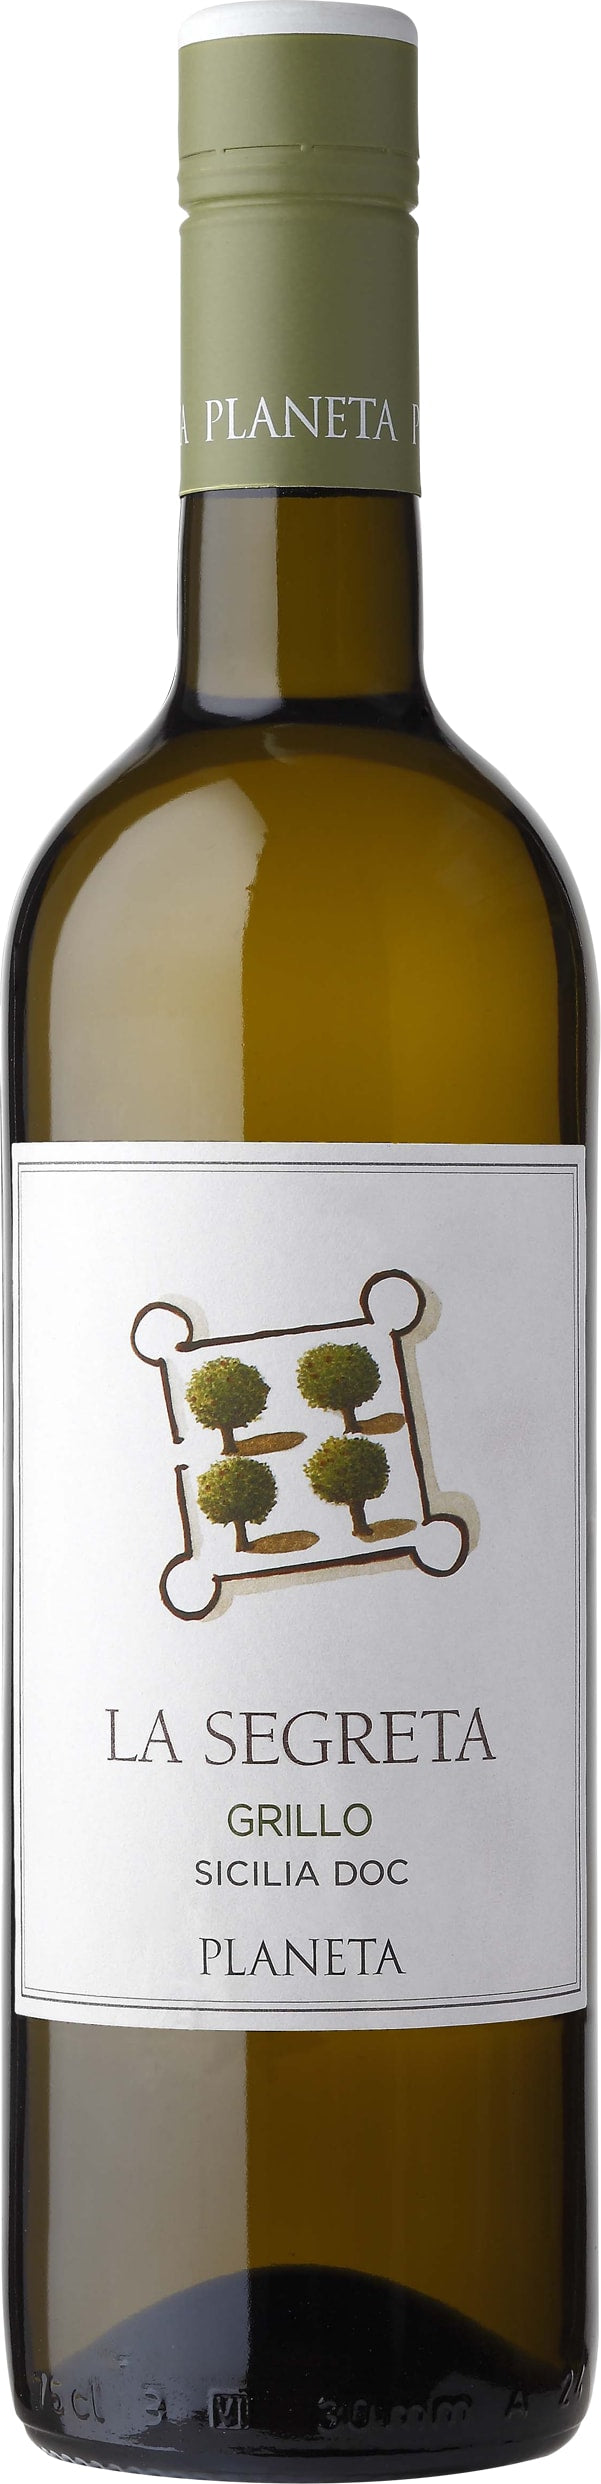 Planeta La Segreta Grillo Sicilia DOC 2023 75cl - Buy Planeta Wines from GREAT WINES DIRECT wine shop